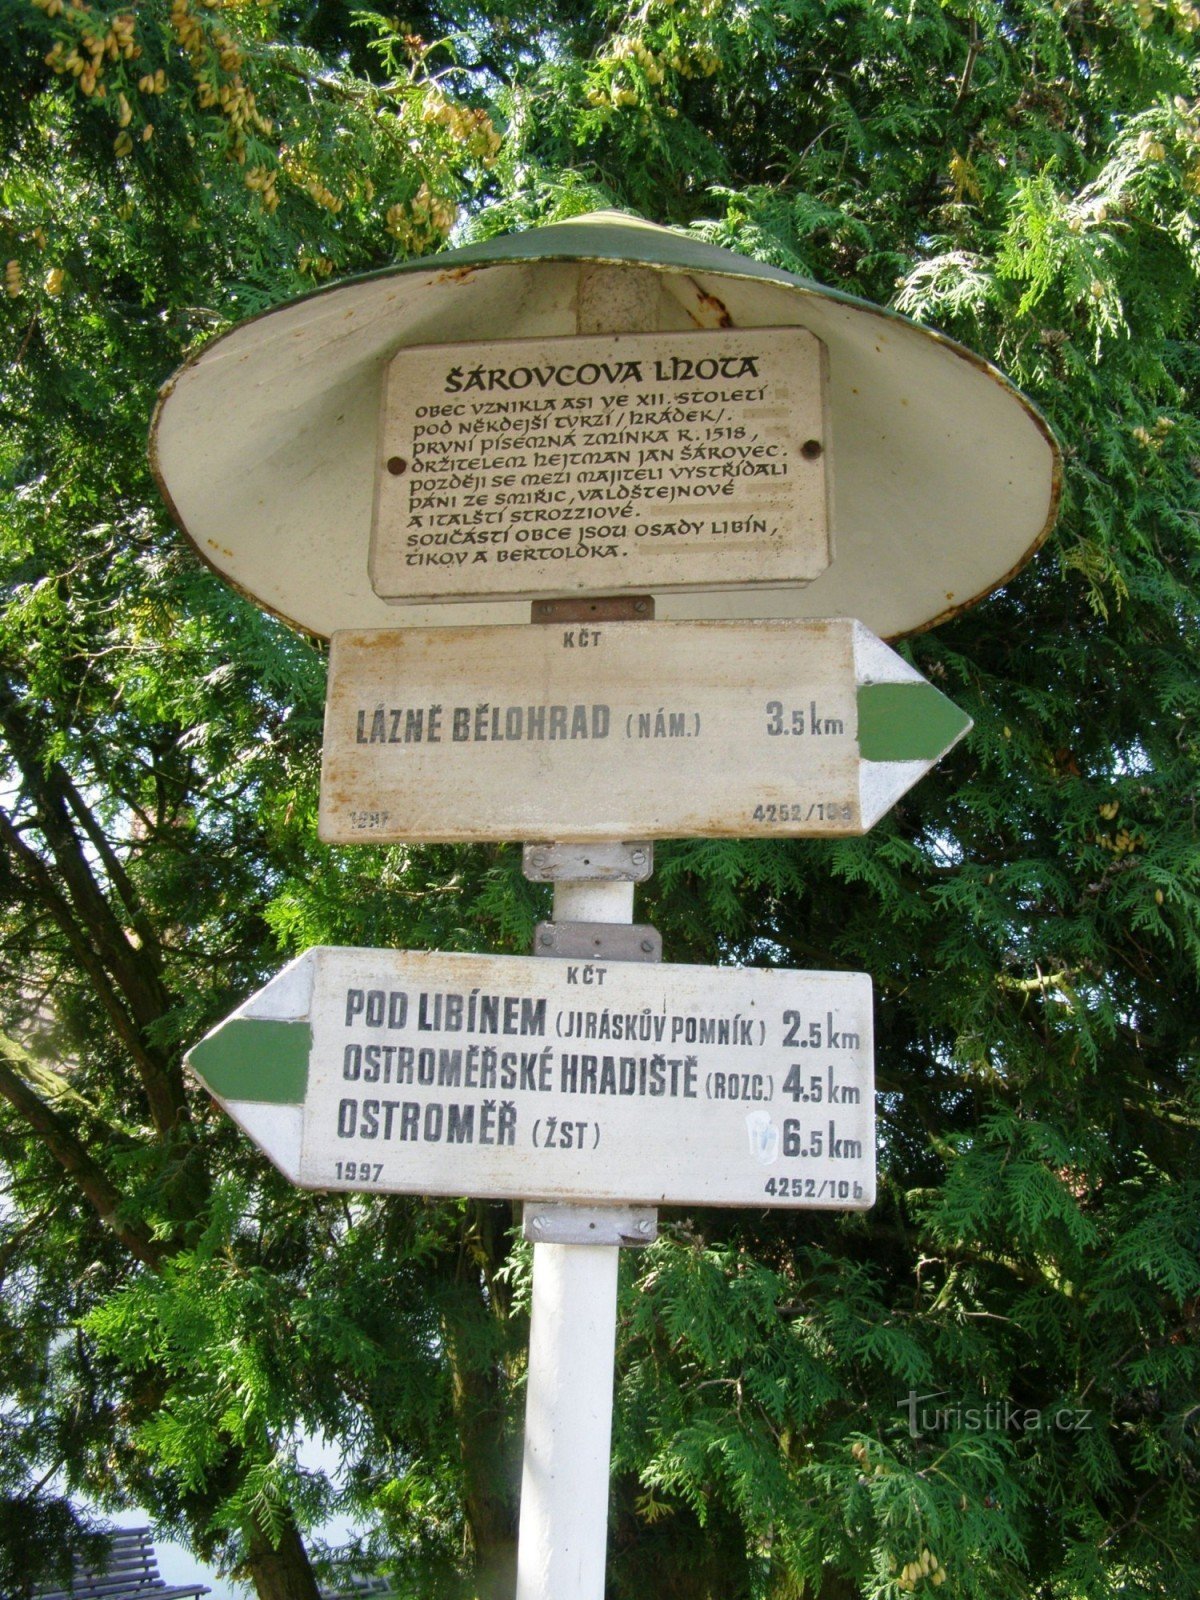 o cruzamento turístico de Šárovcova Lhota